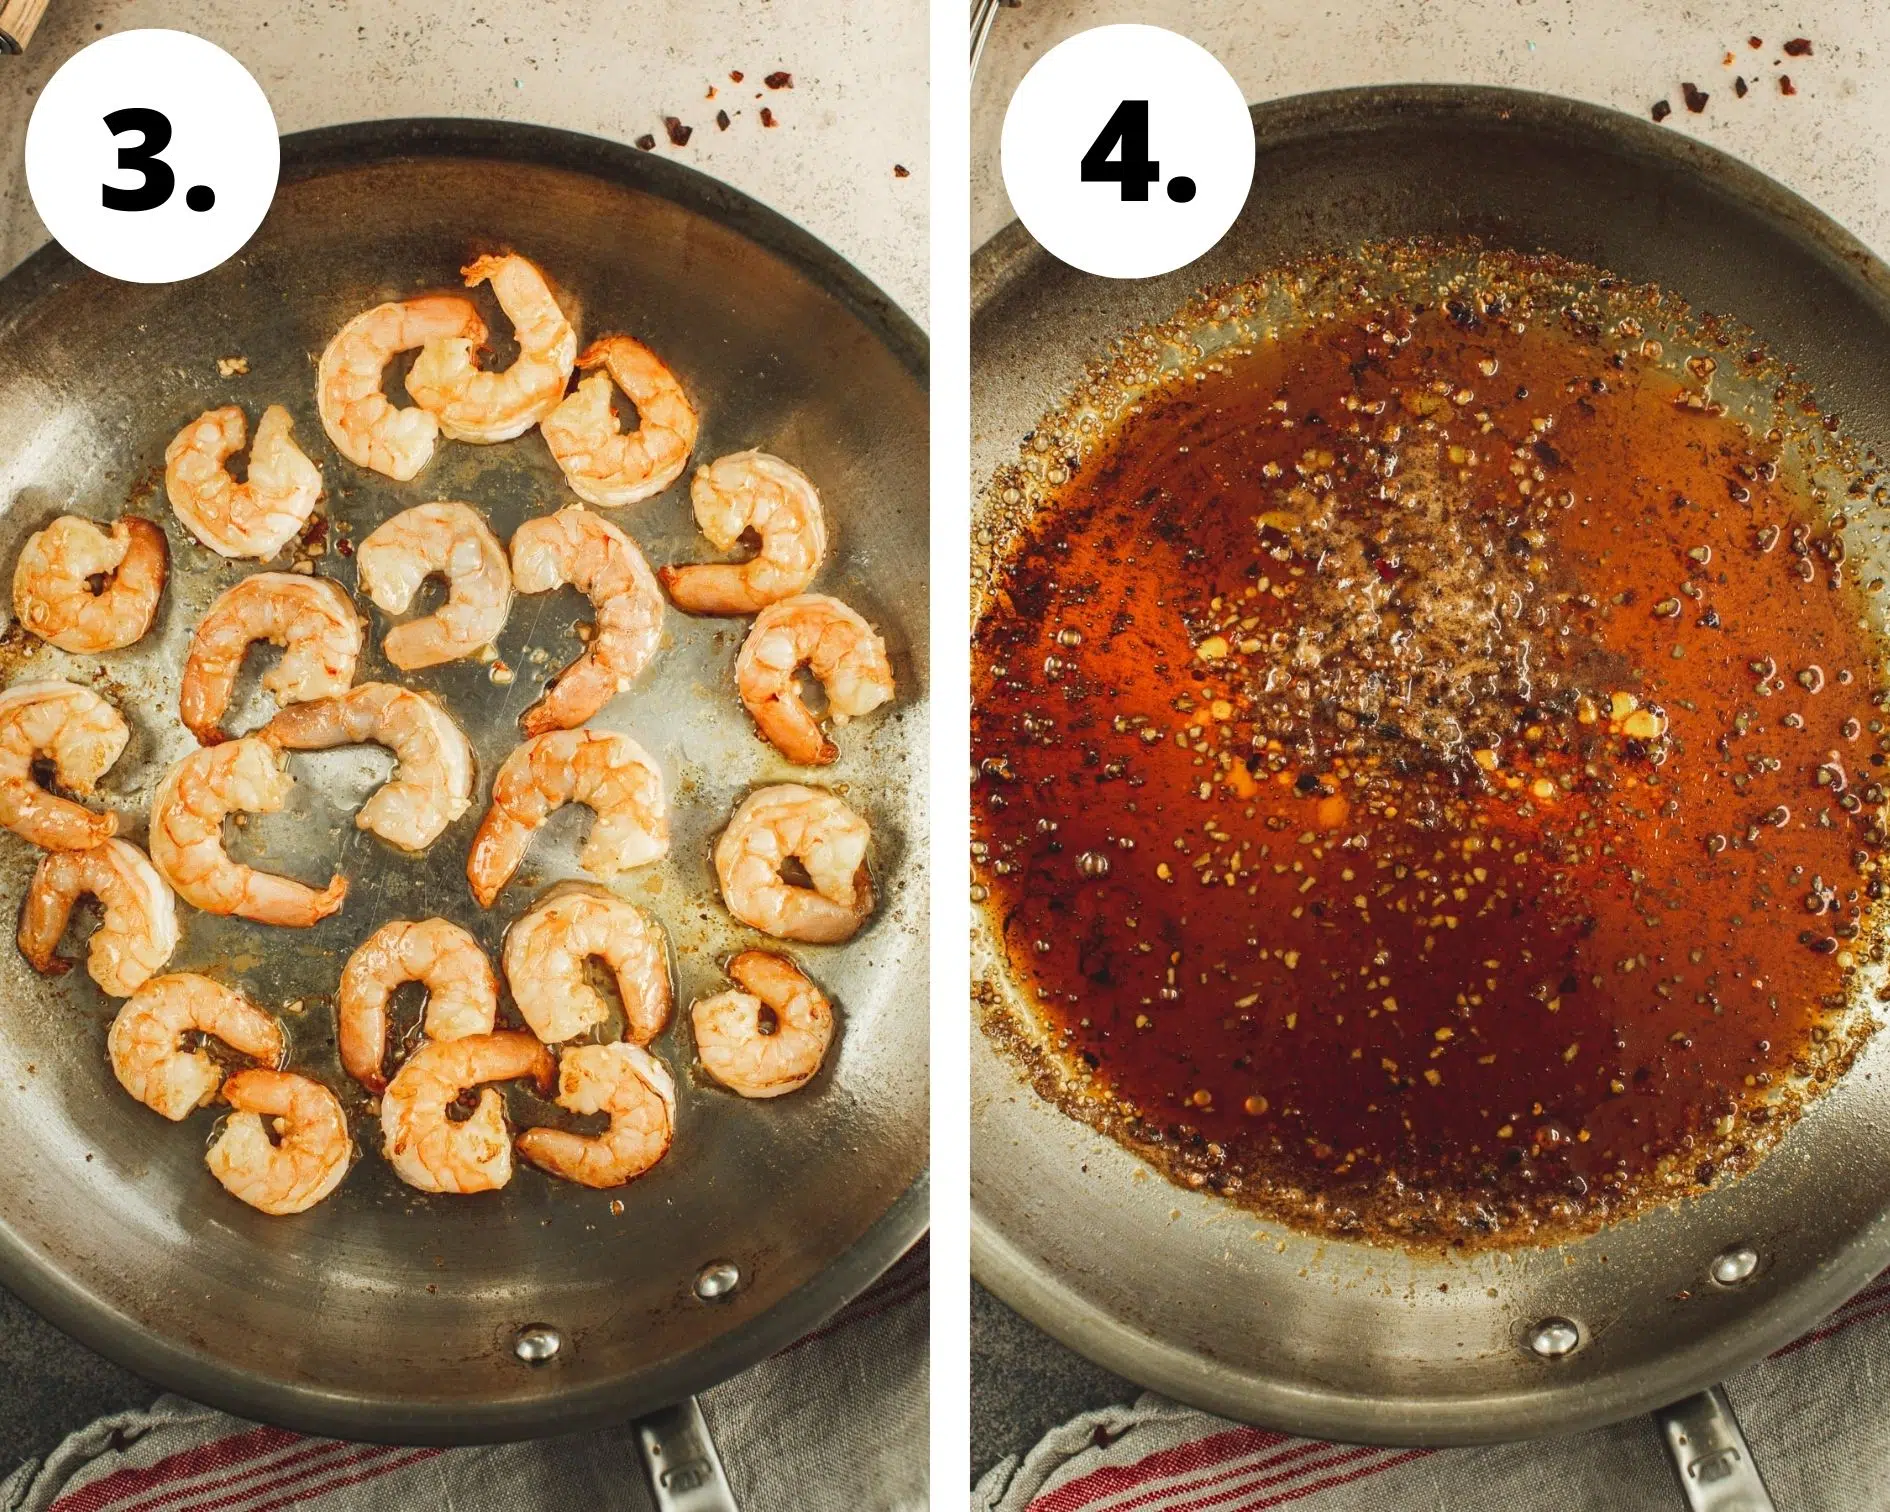 Honey garlic shrimp process steps 3 and 4.